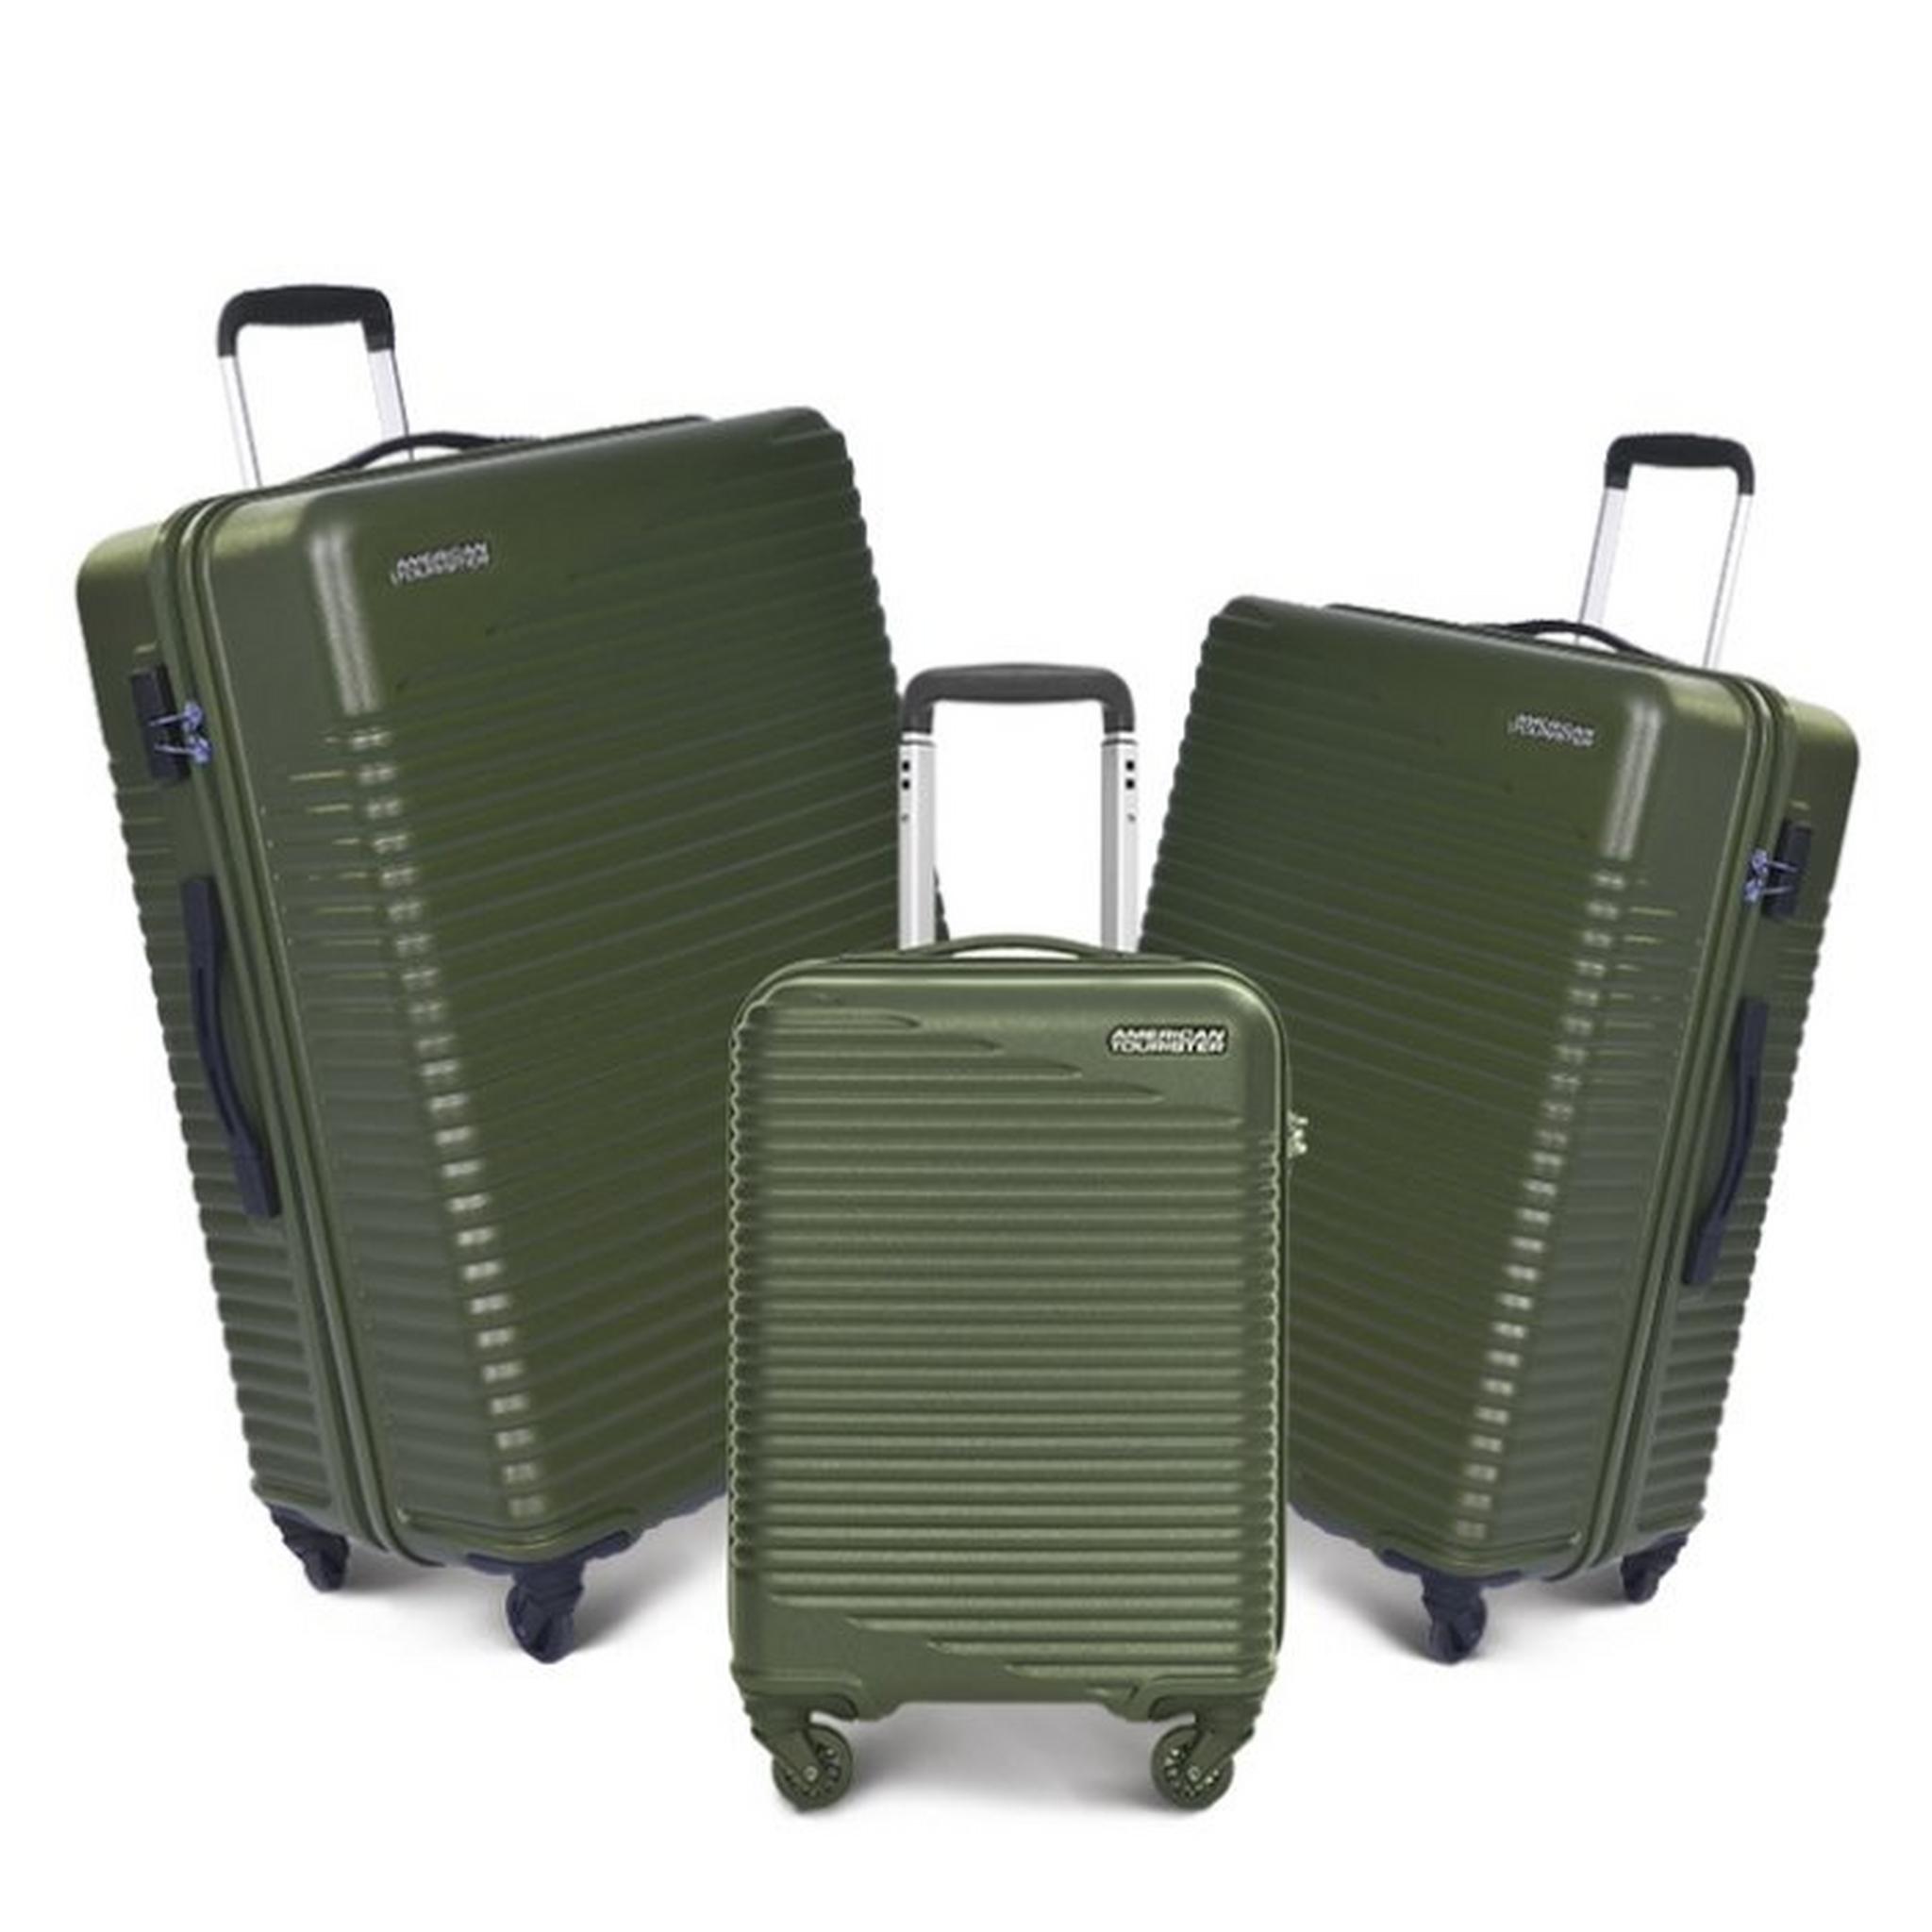 حقائب سكاي بارك الصلبة من أميريكان توريستر - ٣ قطع - أخضر